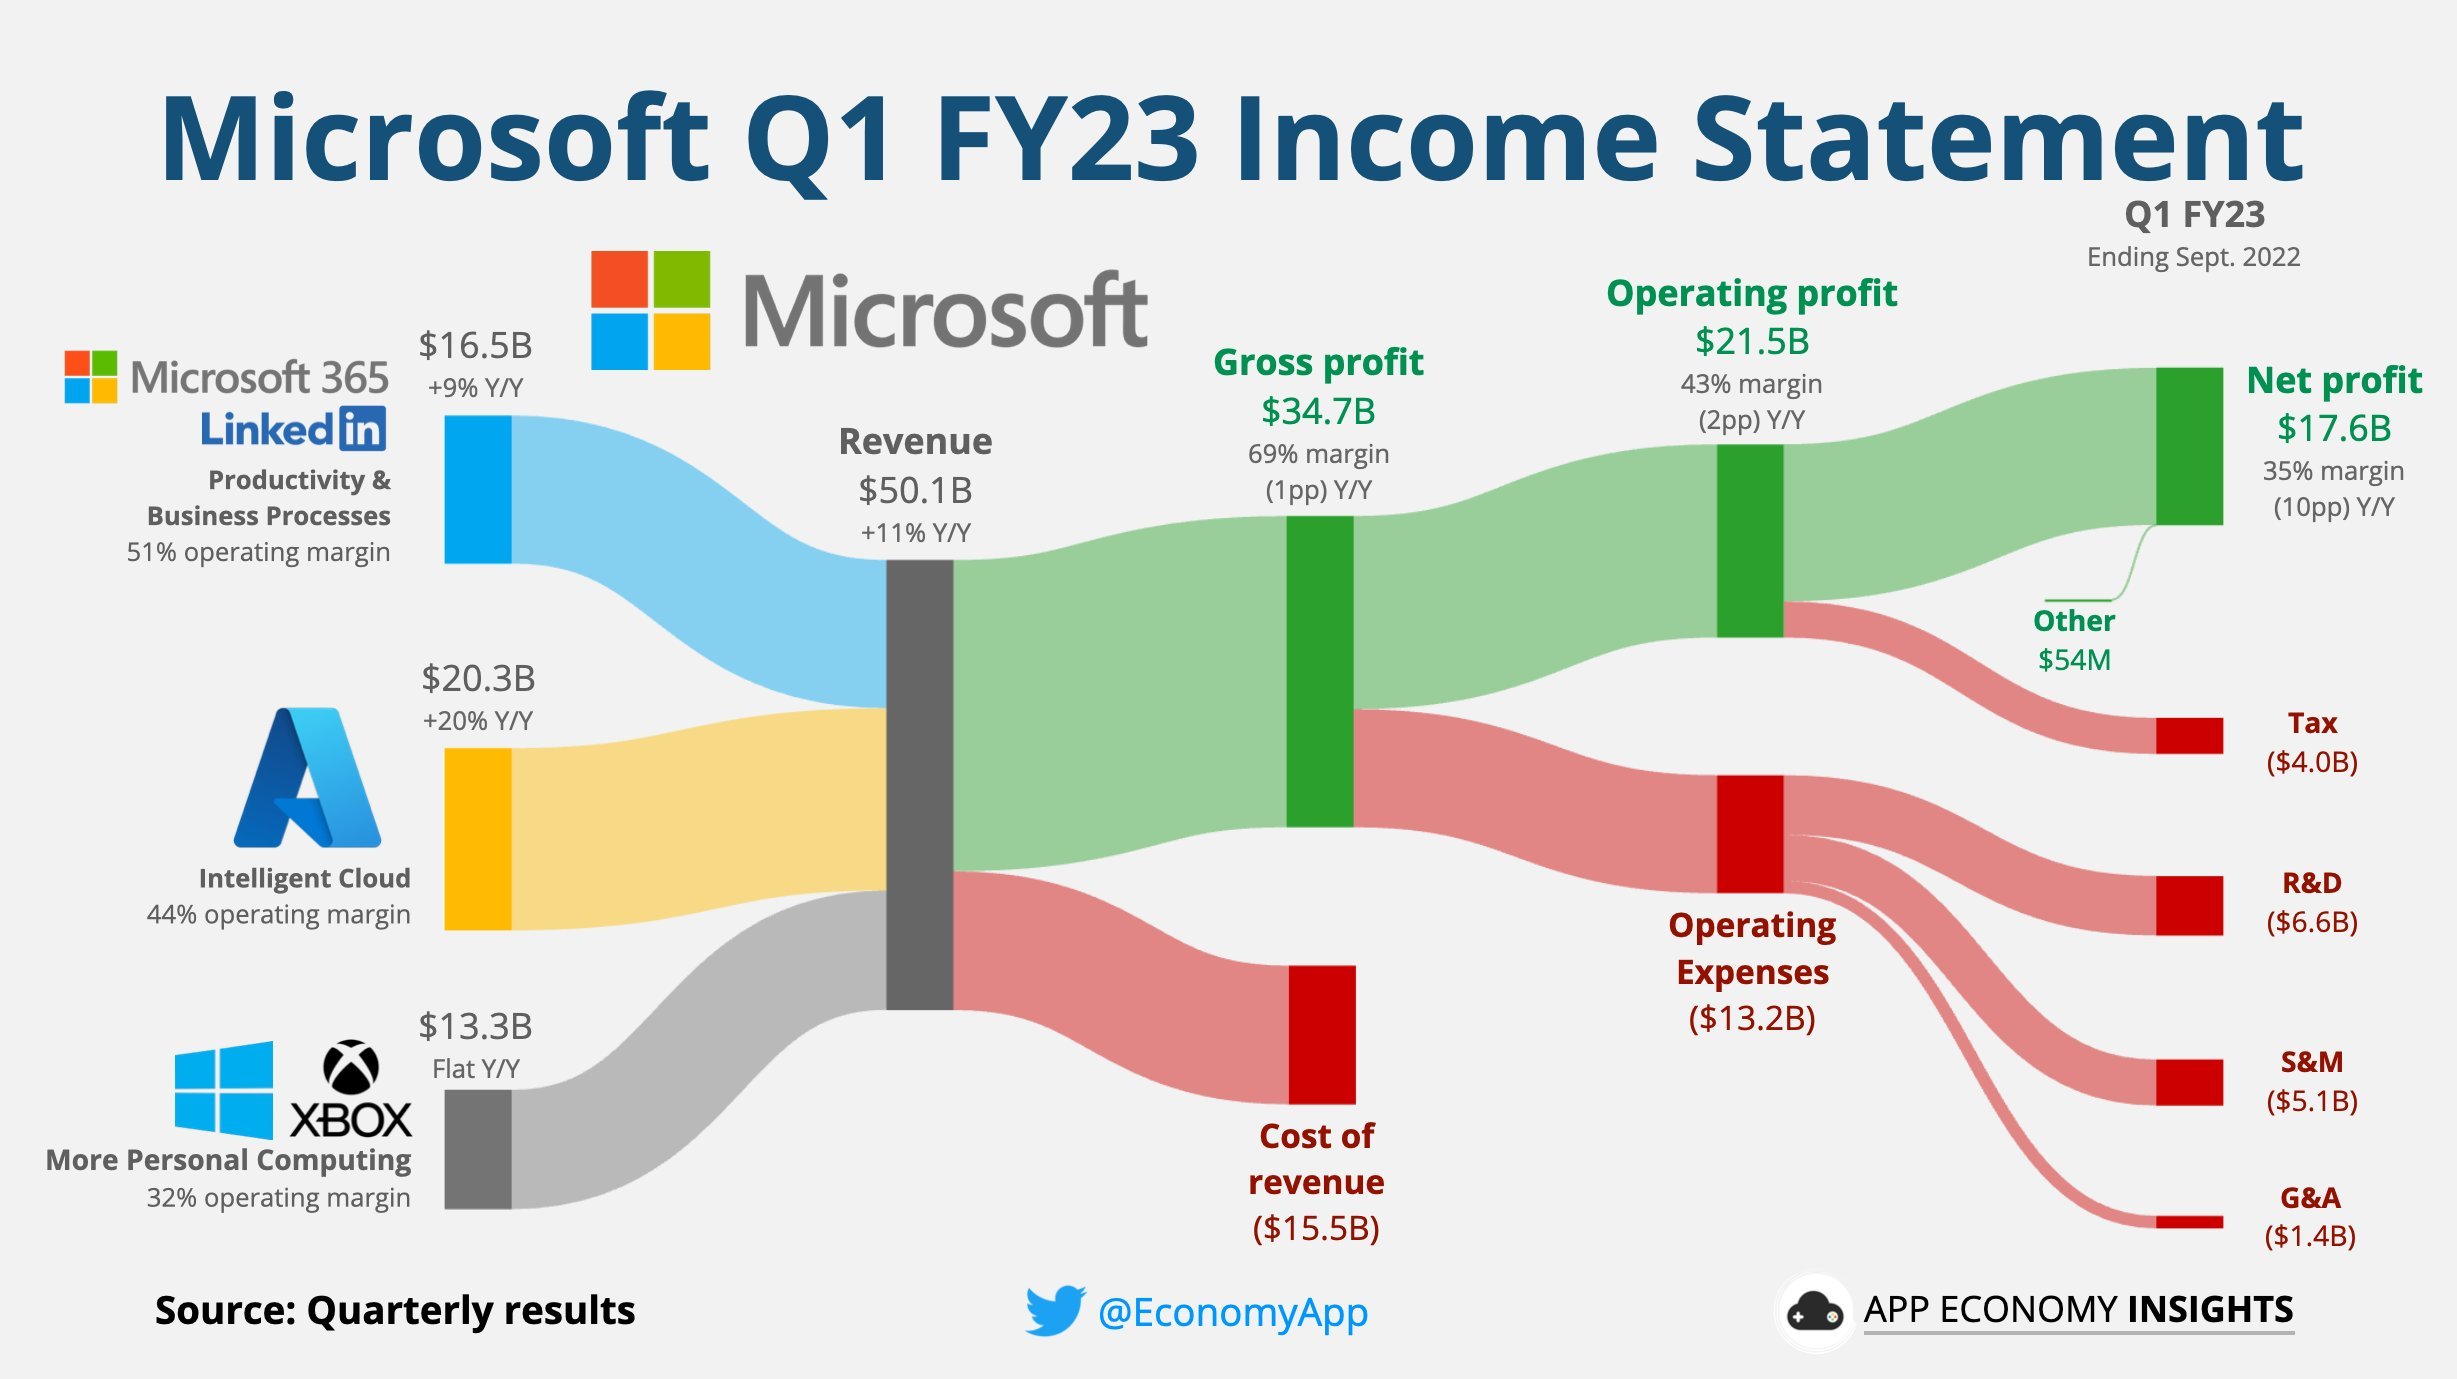 Microsoft's first quarter 2023 revenue infographic